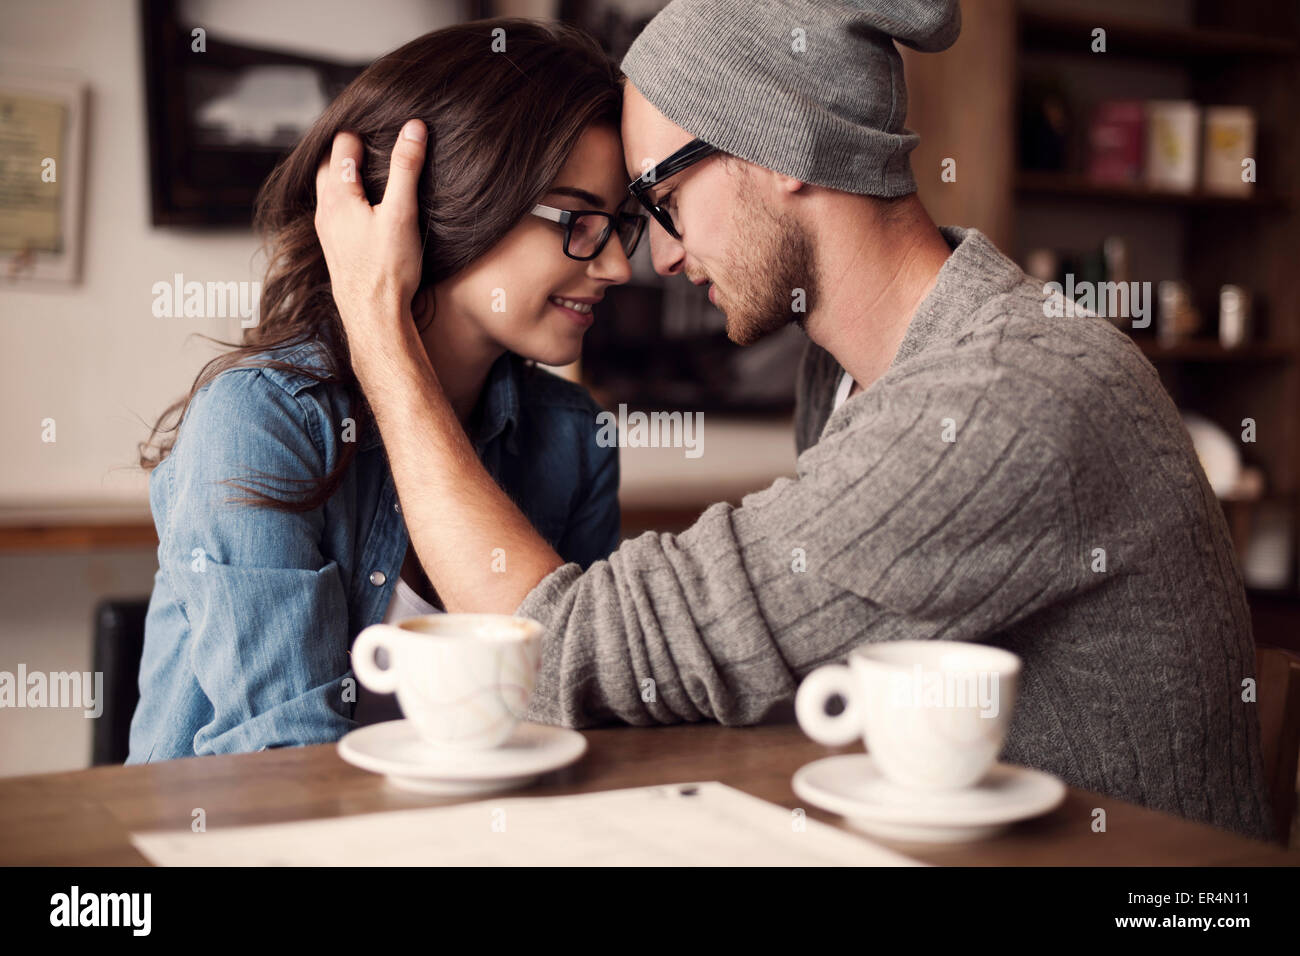 Romantische Momente für junges Paar. Krakau, Polen Stockfoto